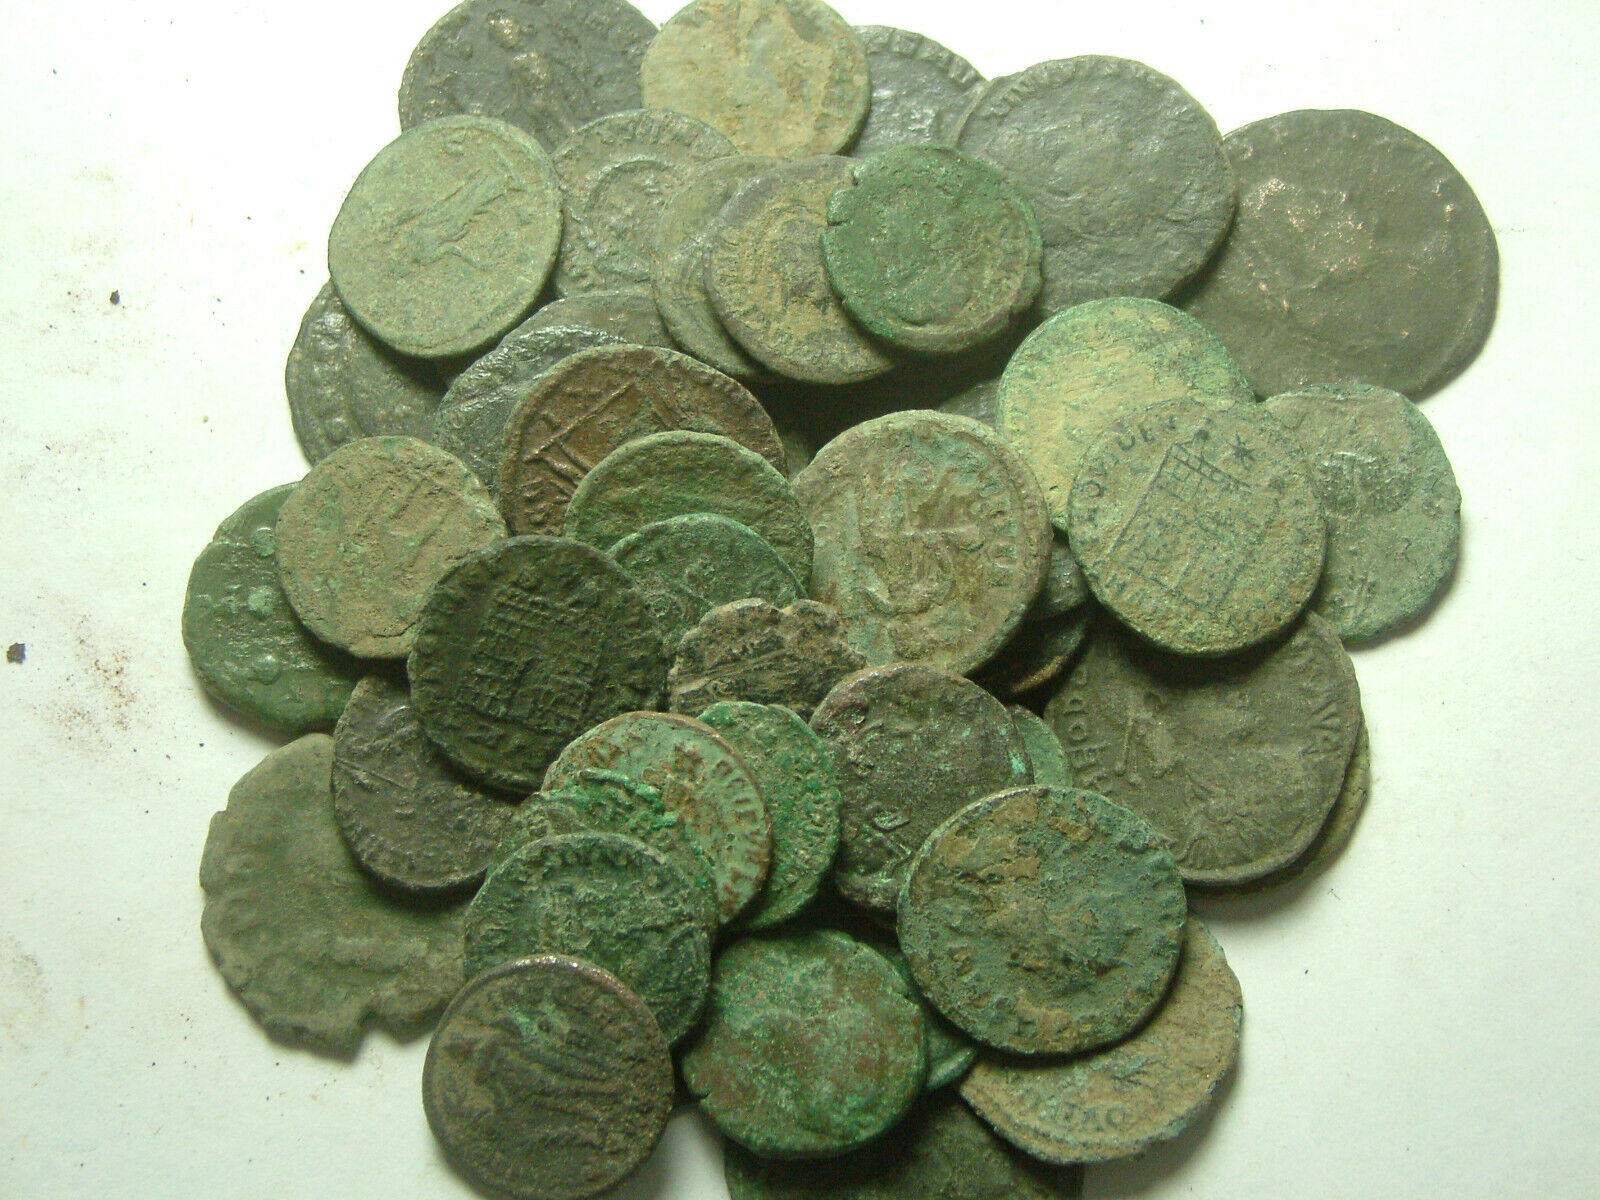 Lot genuine Ancient Roman coins Constantine/Valens/Constantius/Licinius/Claudius Без бренда - фотография #8